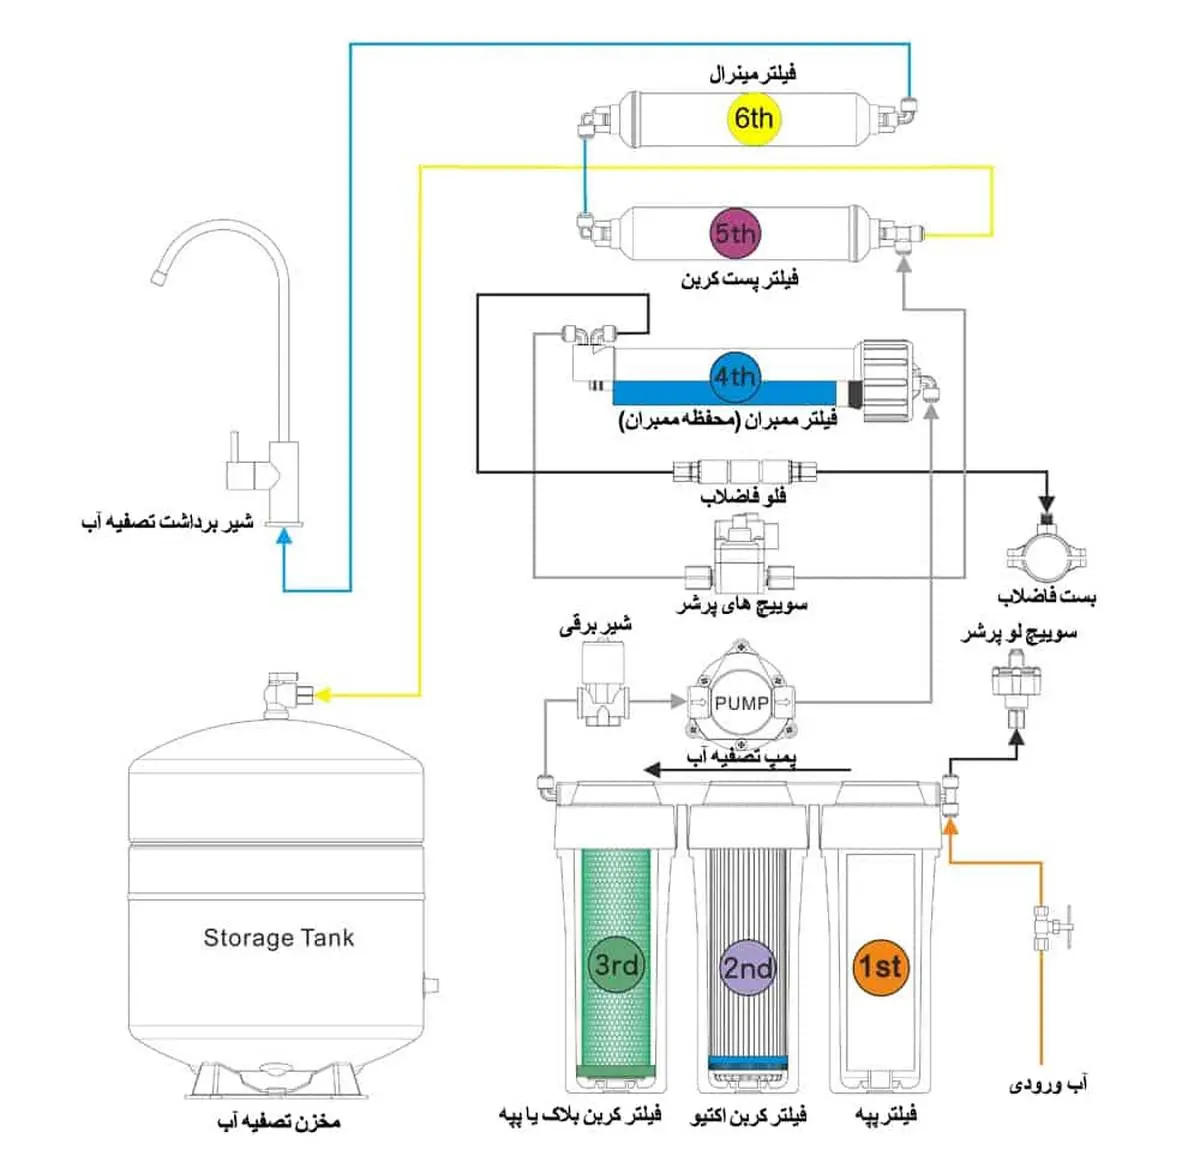 تعمیر دستگاه تصفیه آب | تعمیرات تخصصی دستگاه تصفیه آب
